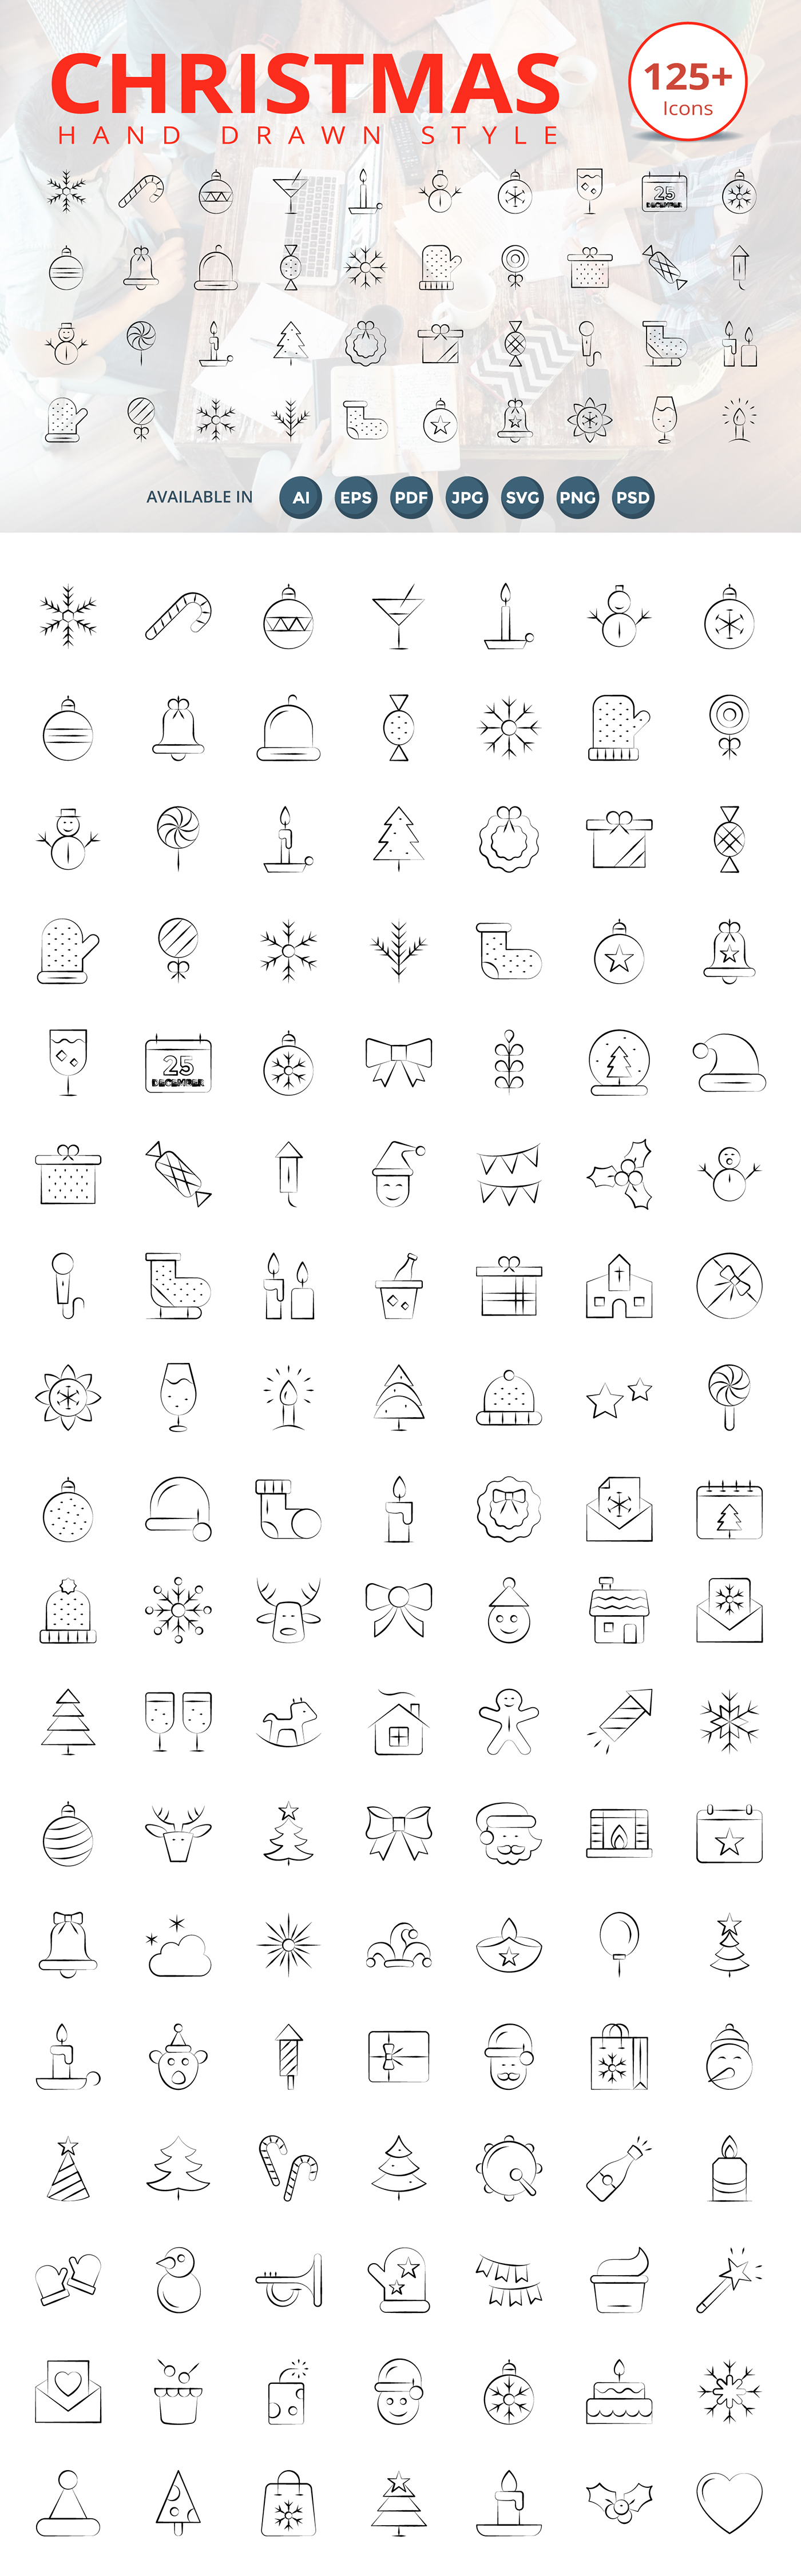 handdrawn icons graphics Christmas design